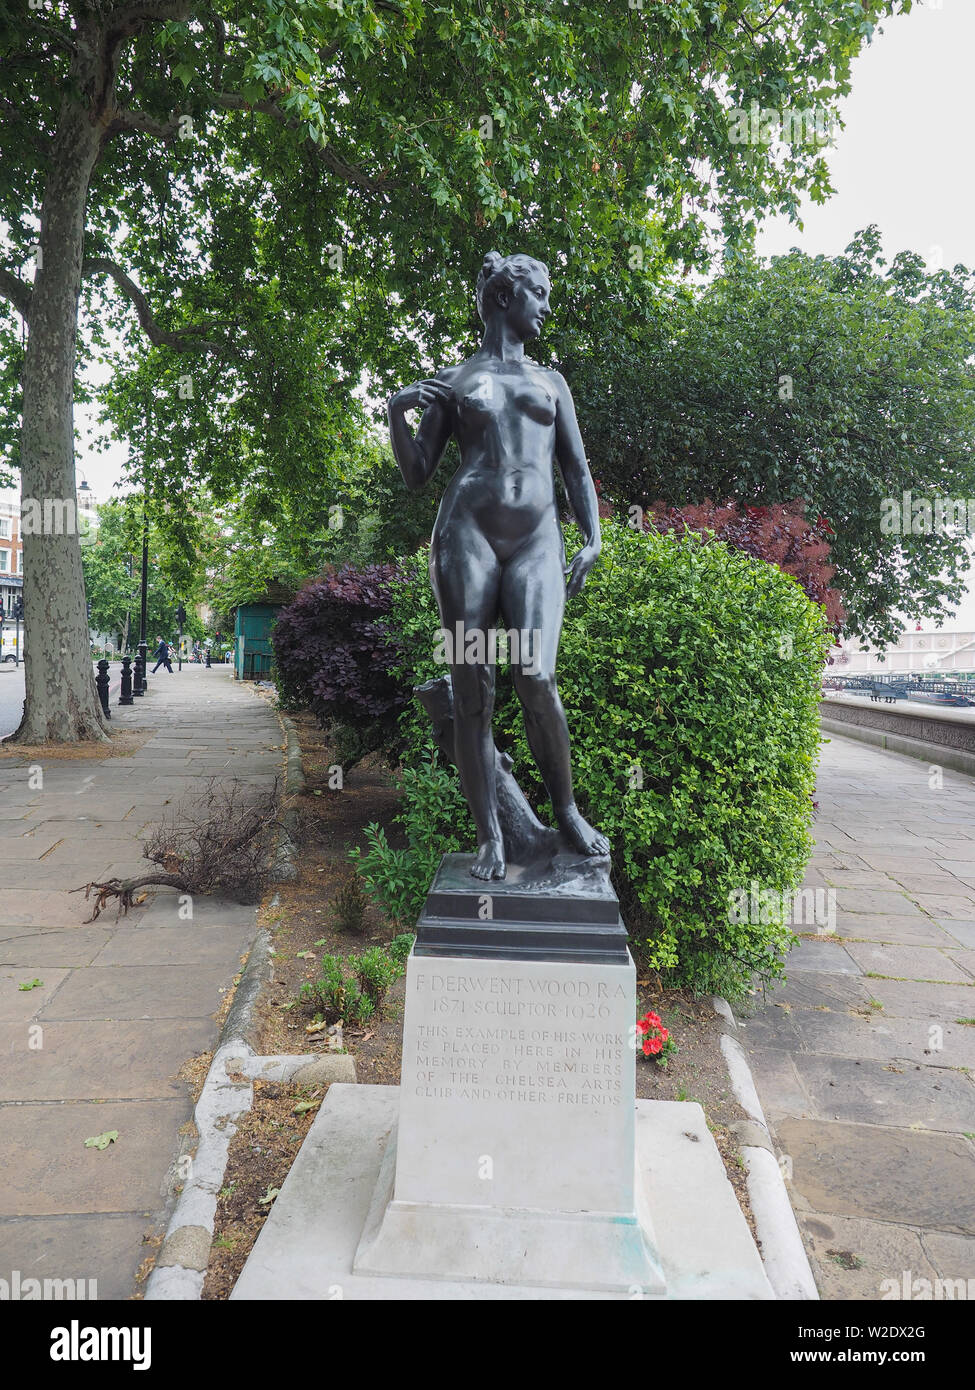 Londres, UK - circa 2019 JUIN : statue en bronze d'Atalanta (vierge chasseresse de la mythologie grecque) par le sculpteur anglais Francis Derwent Wood érigée sur Che Banque D'Images